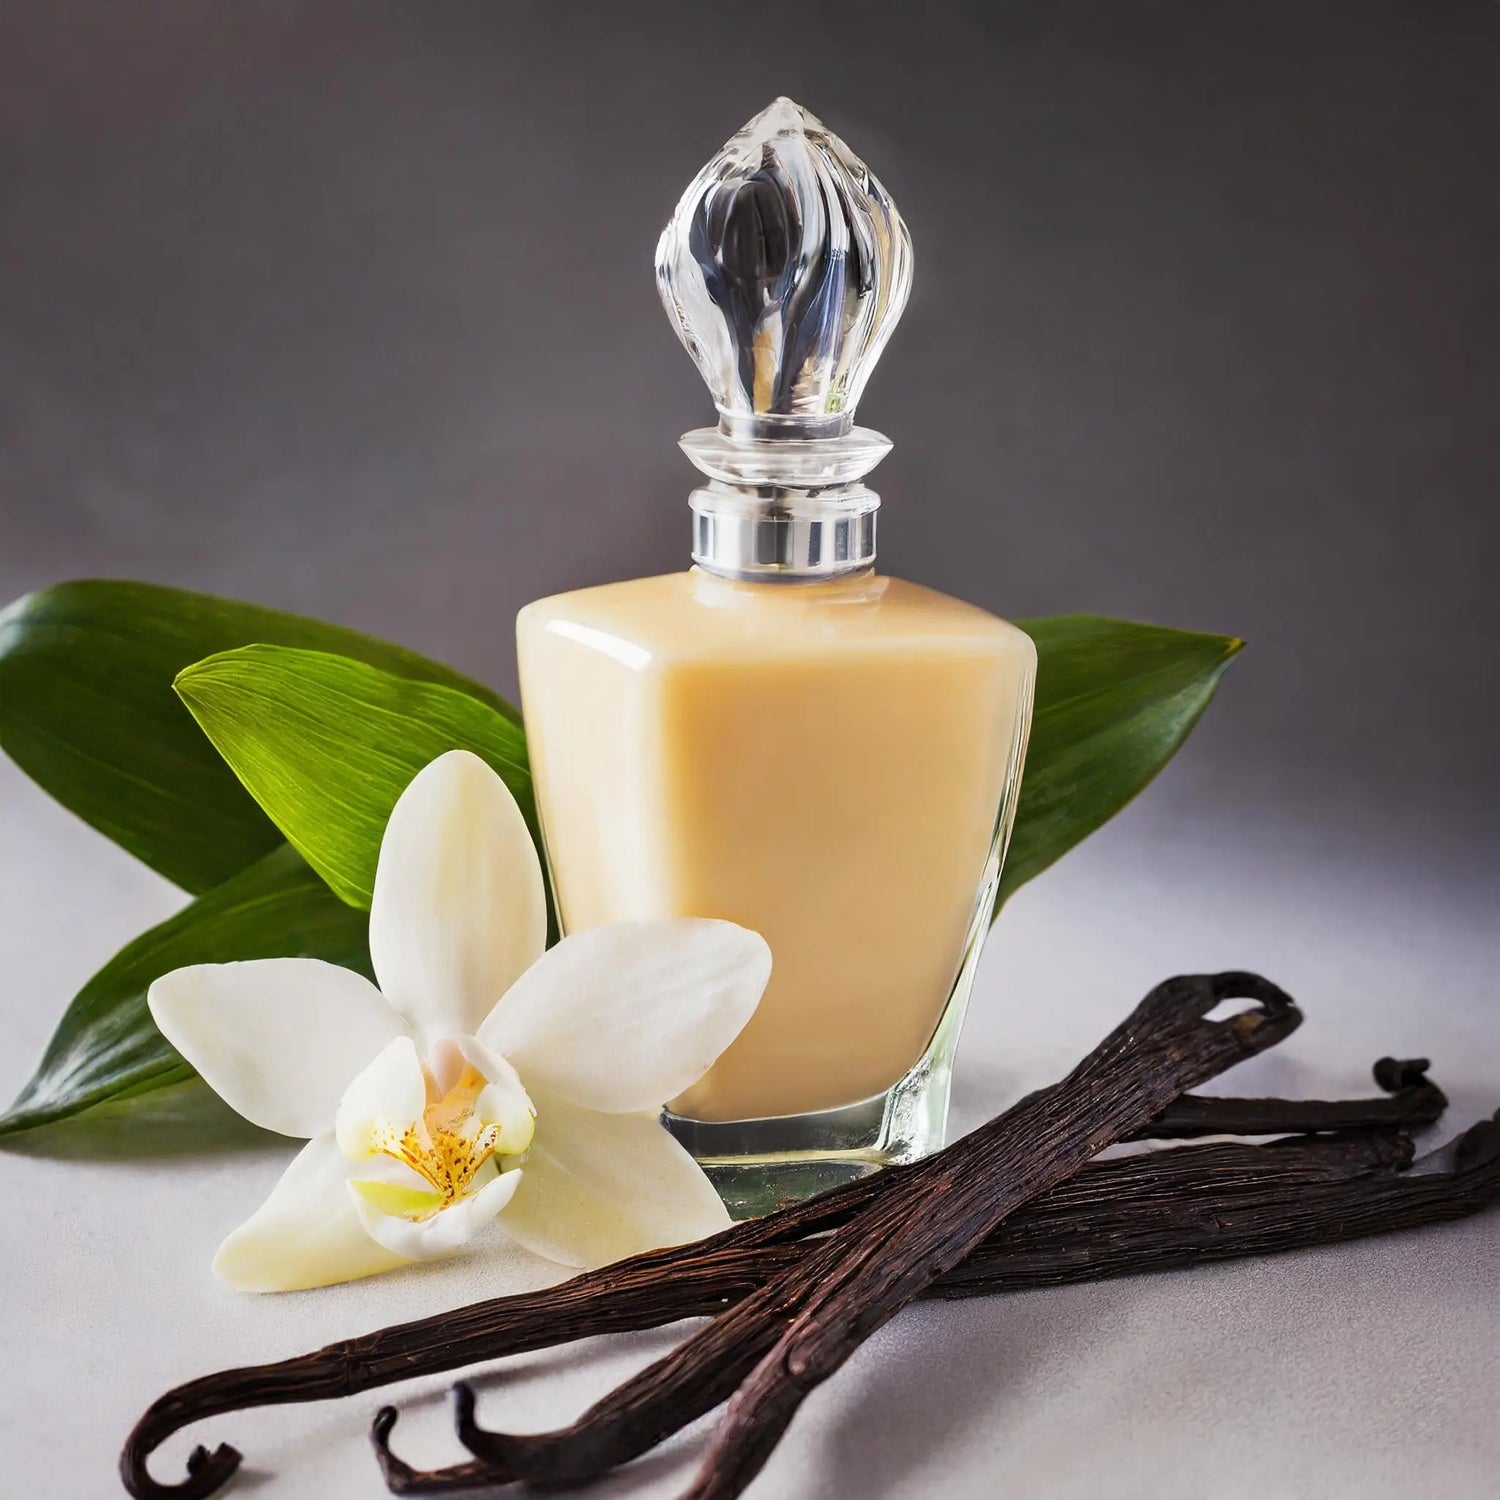 Vanille-Parfum Hani Perfumesduftzwillinge parfum dupe zwilling duftzwilling